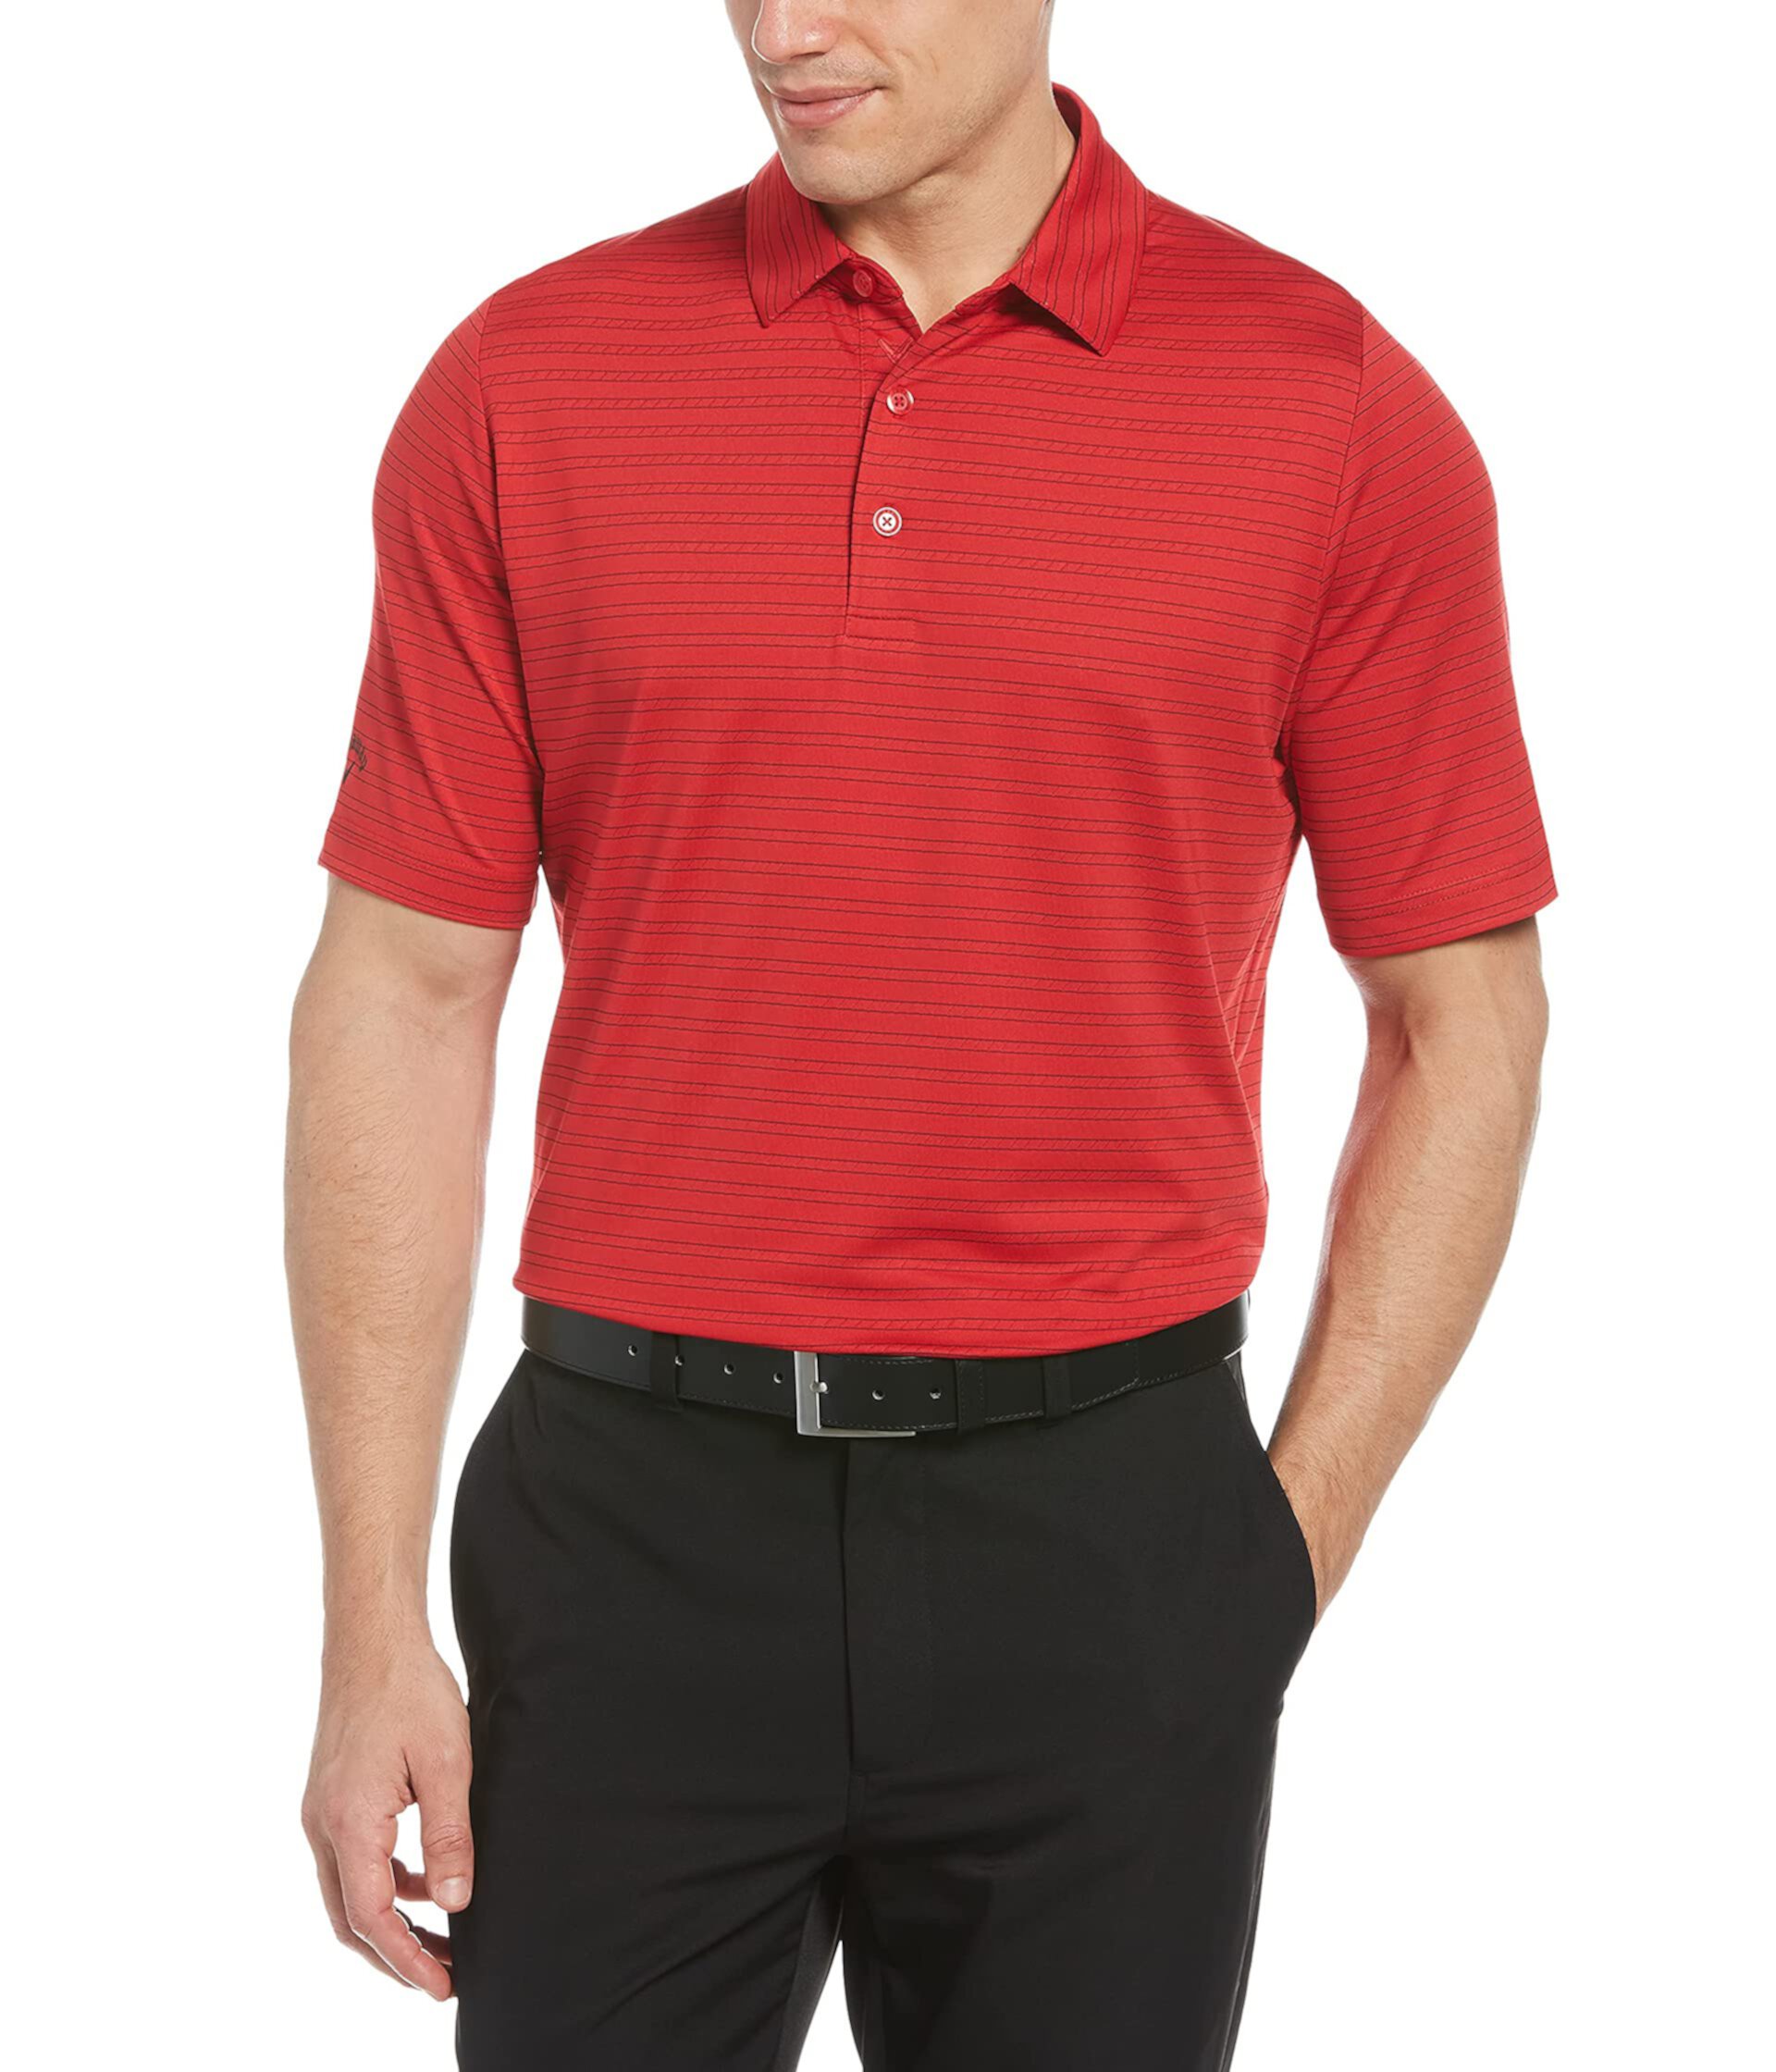 Рубашка-поло для гольфа с короткими рукавами и вентилируемой полоской Fine Line Callaway